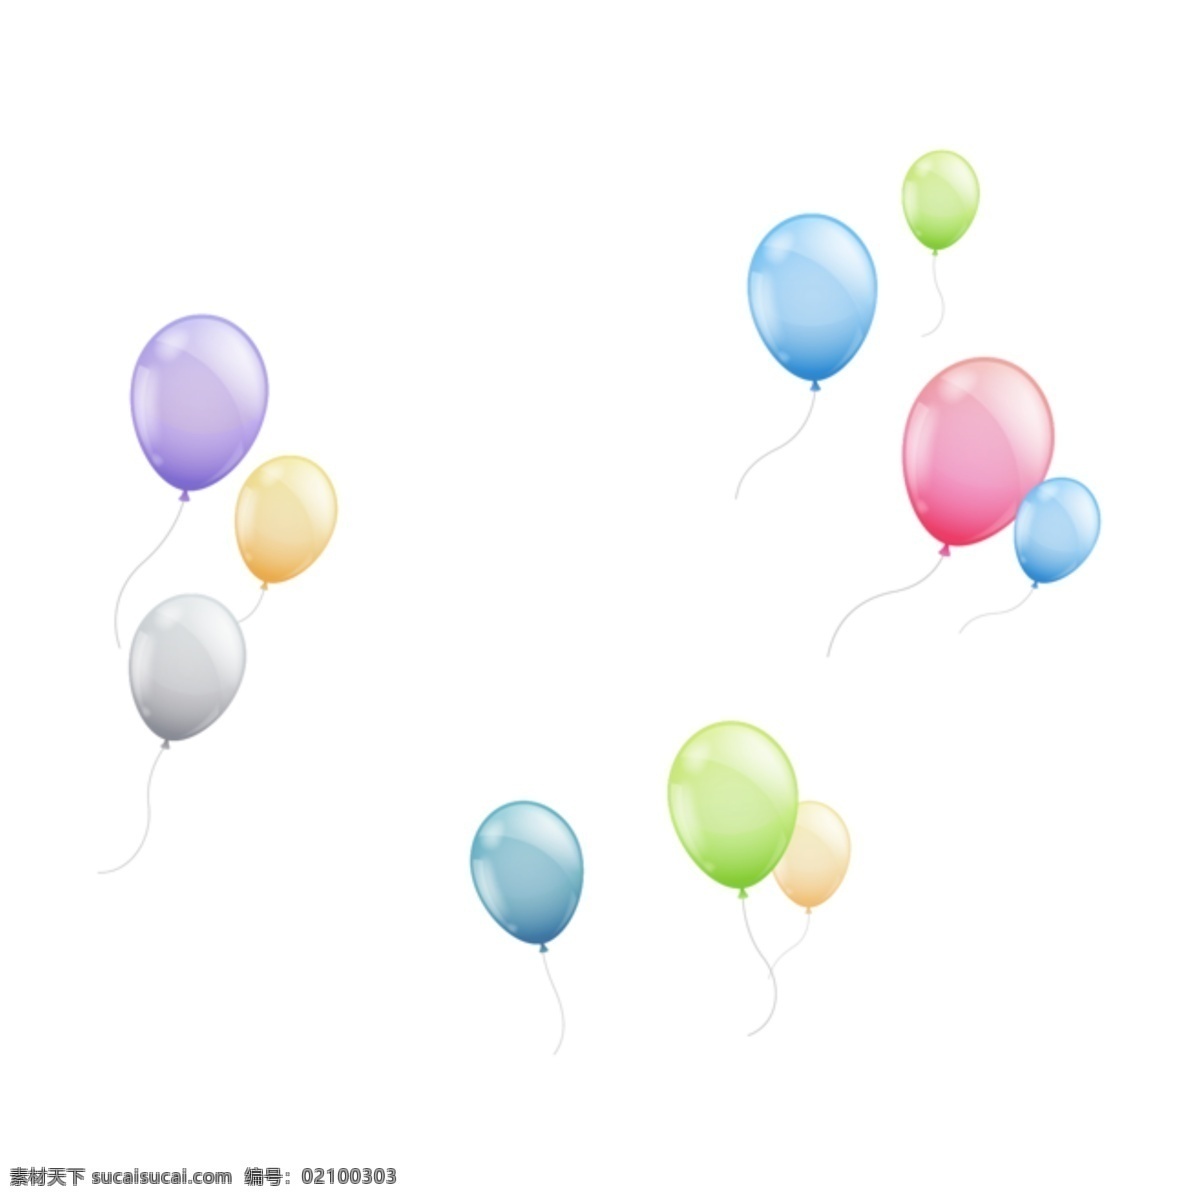 彩色 彩色气球 装饰 点缀 装点 装饰品 红气球 蓝气球 紫气球 装饰气球 晶莹剔透 素材图